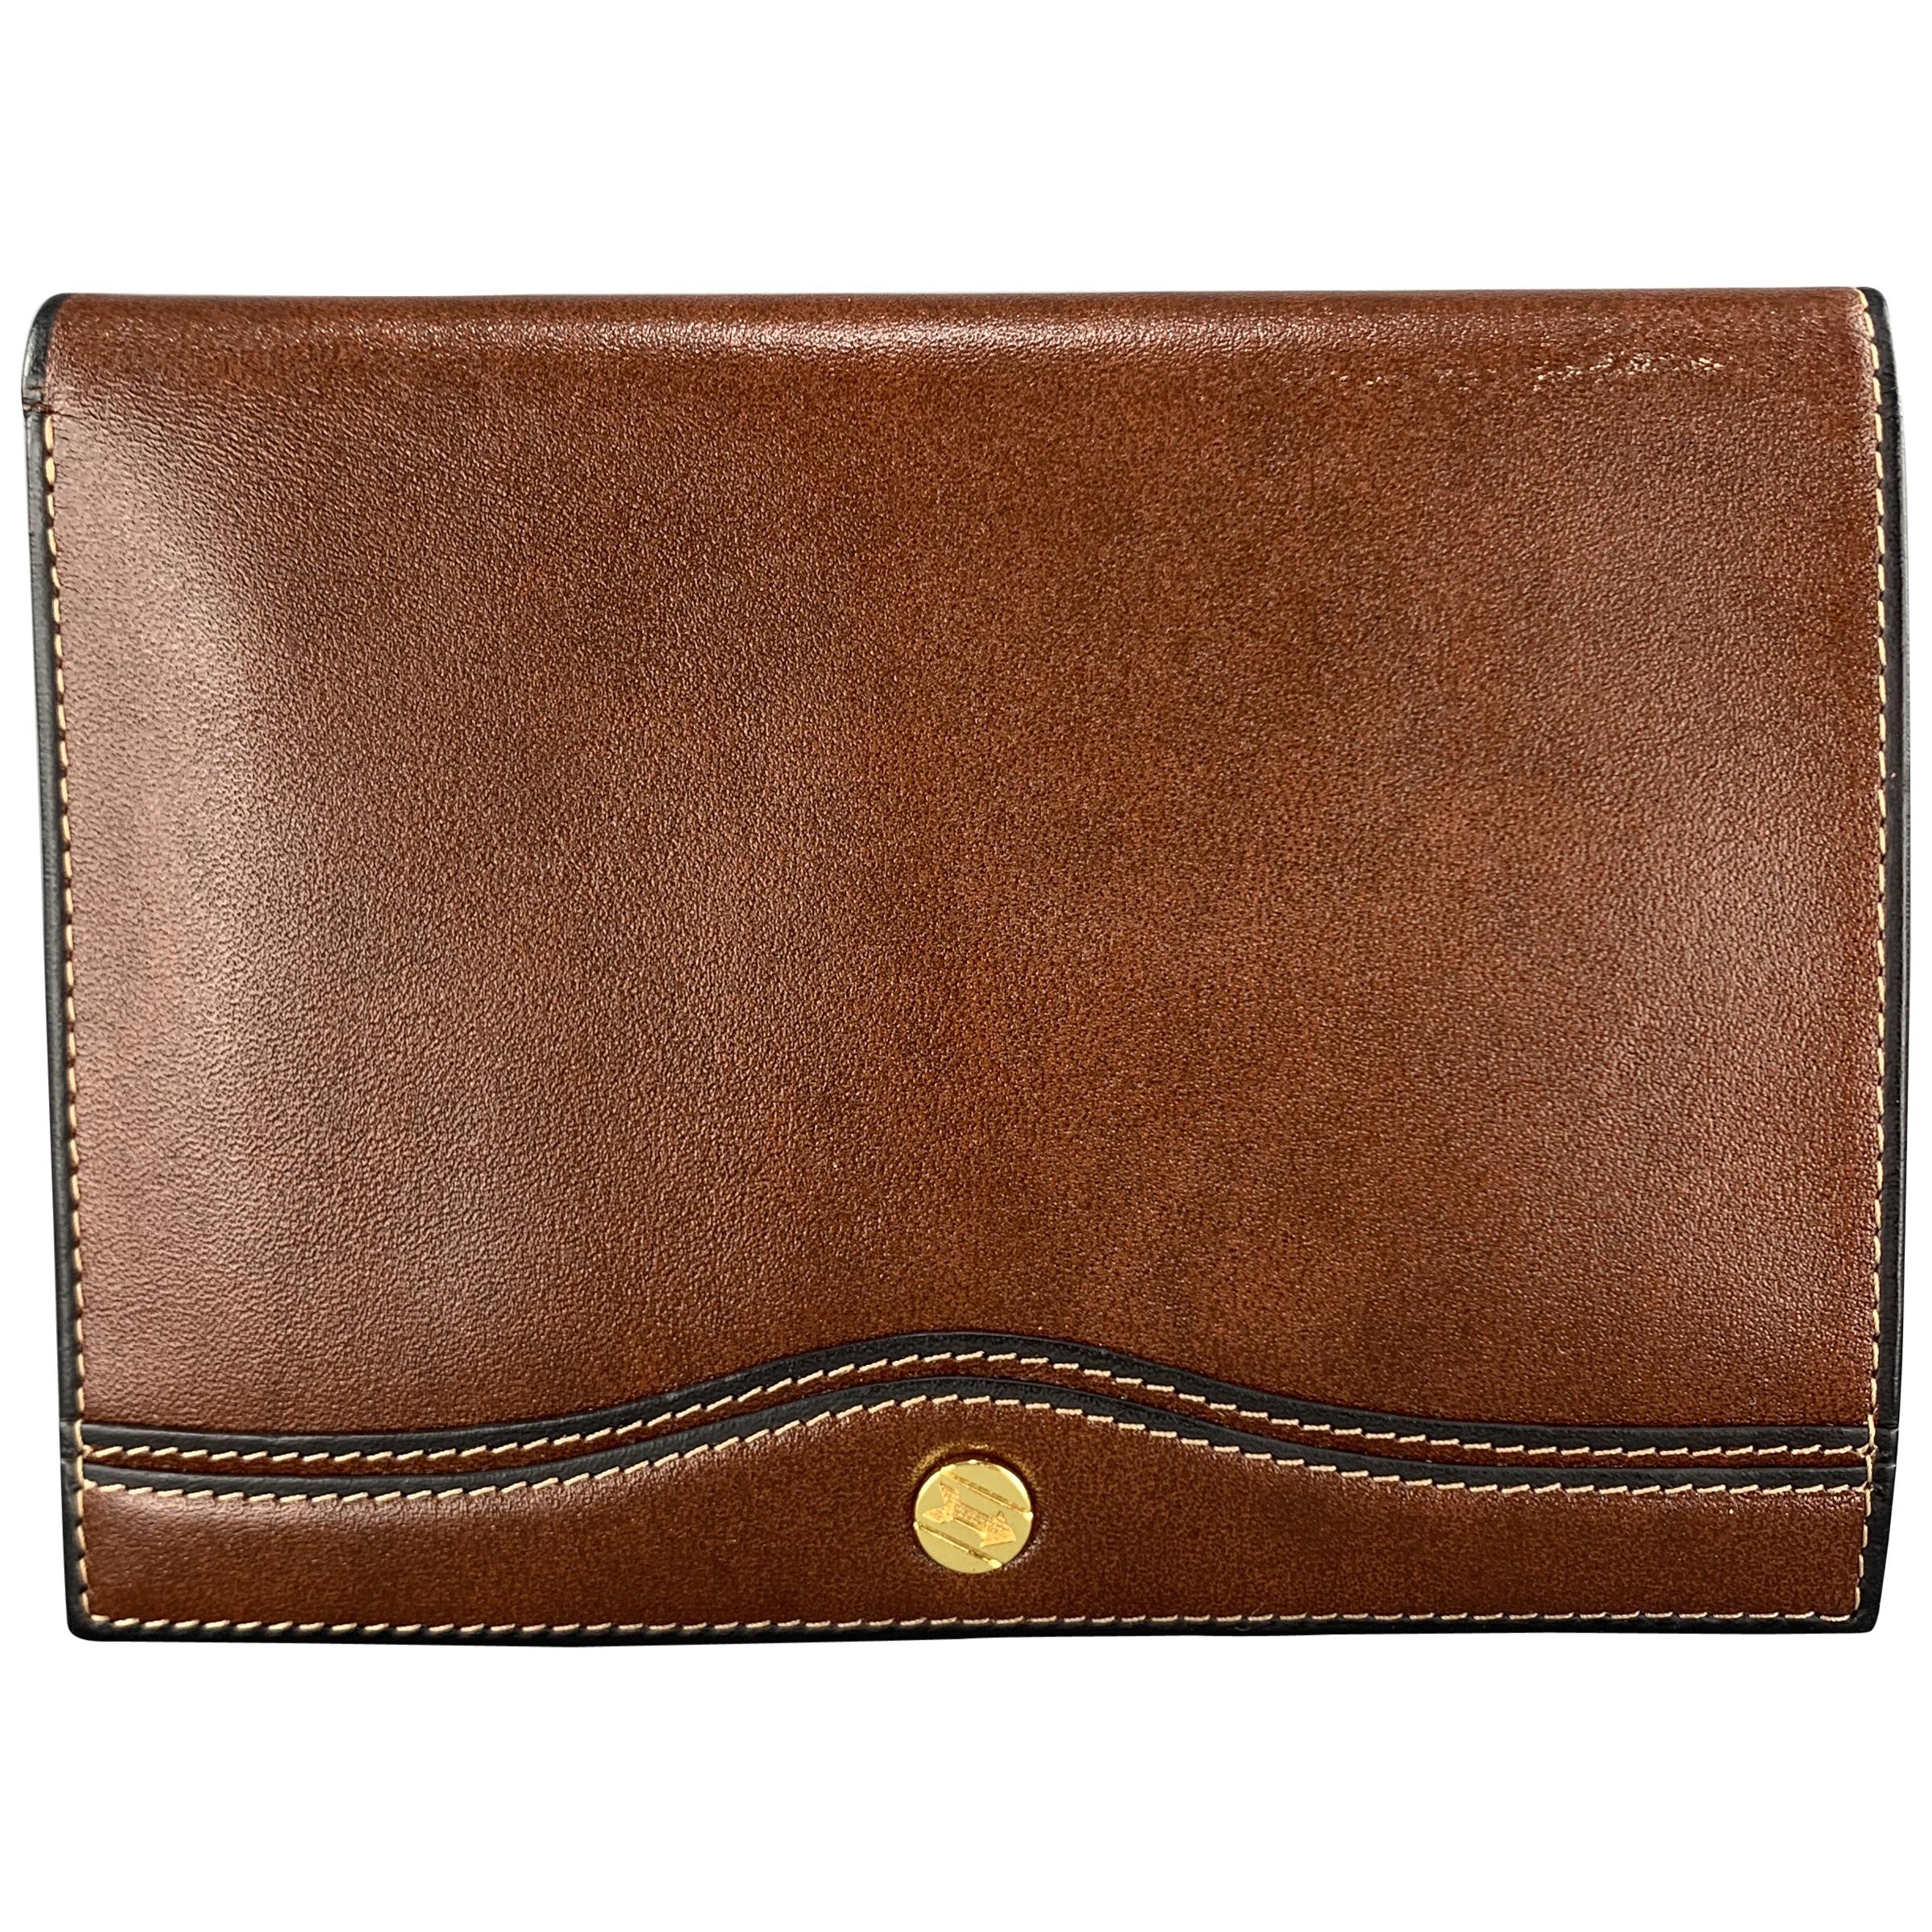 GOLDPFEIL Brown Leather Passport Holder Travel Wallet